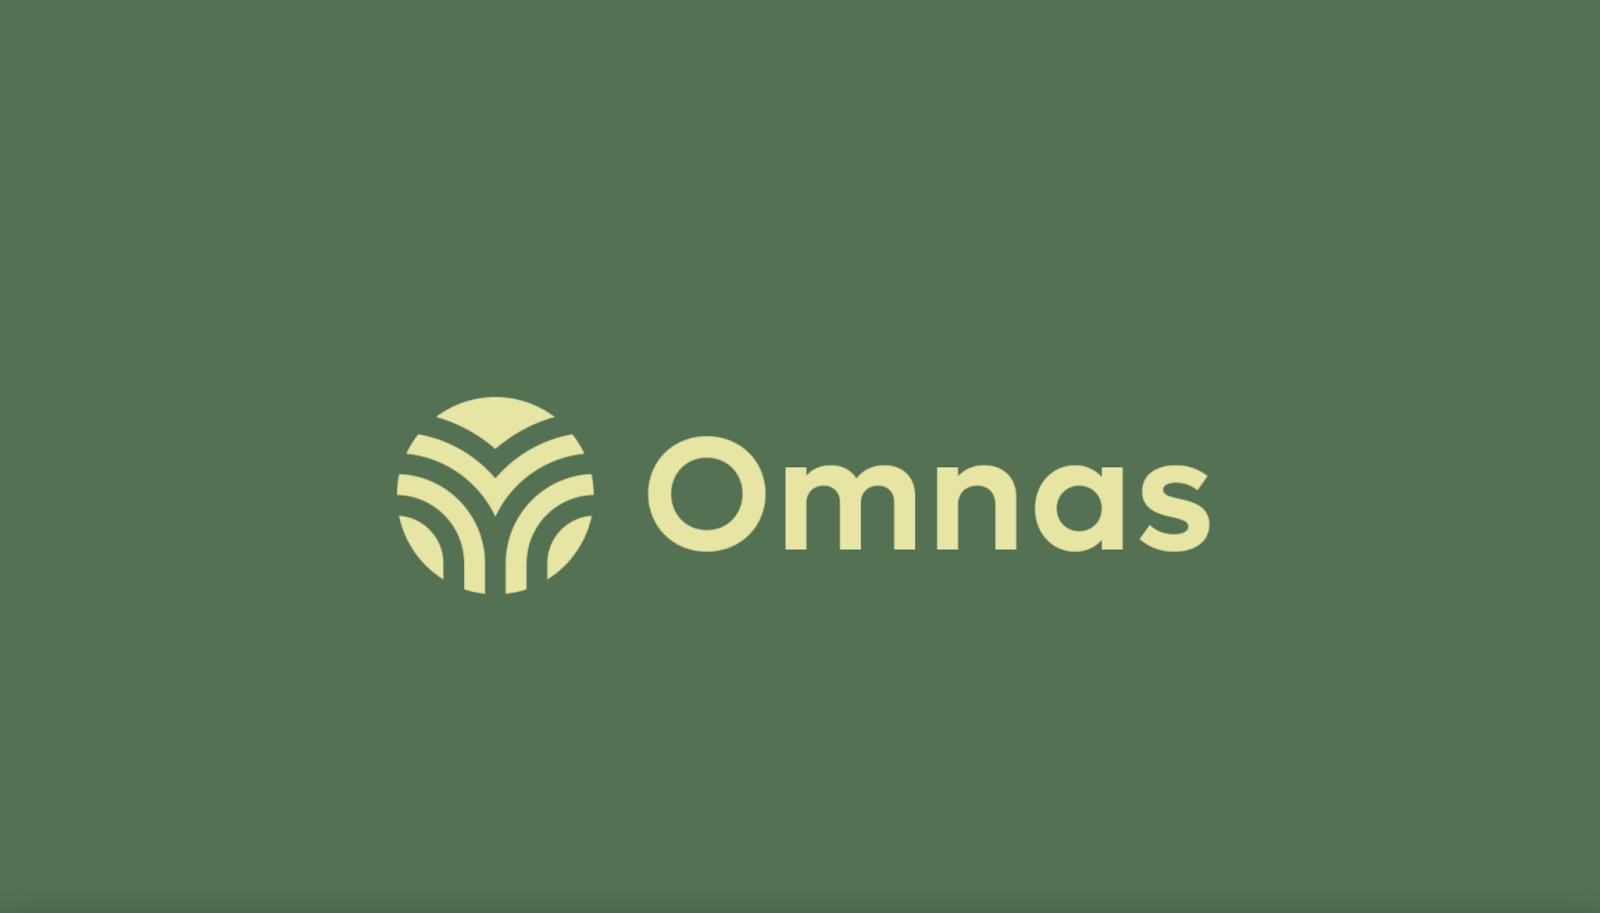 Логотип Omnas, выполненный в стиле миинимализм